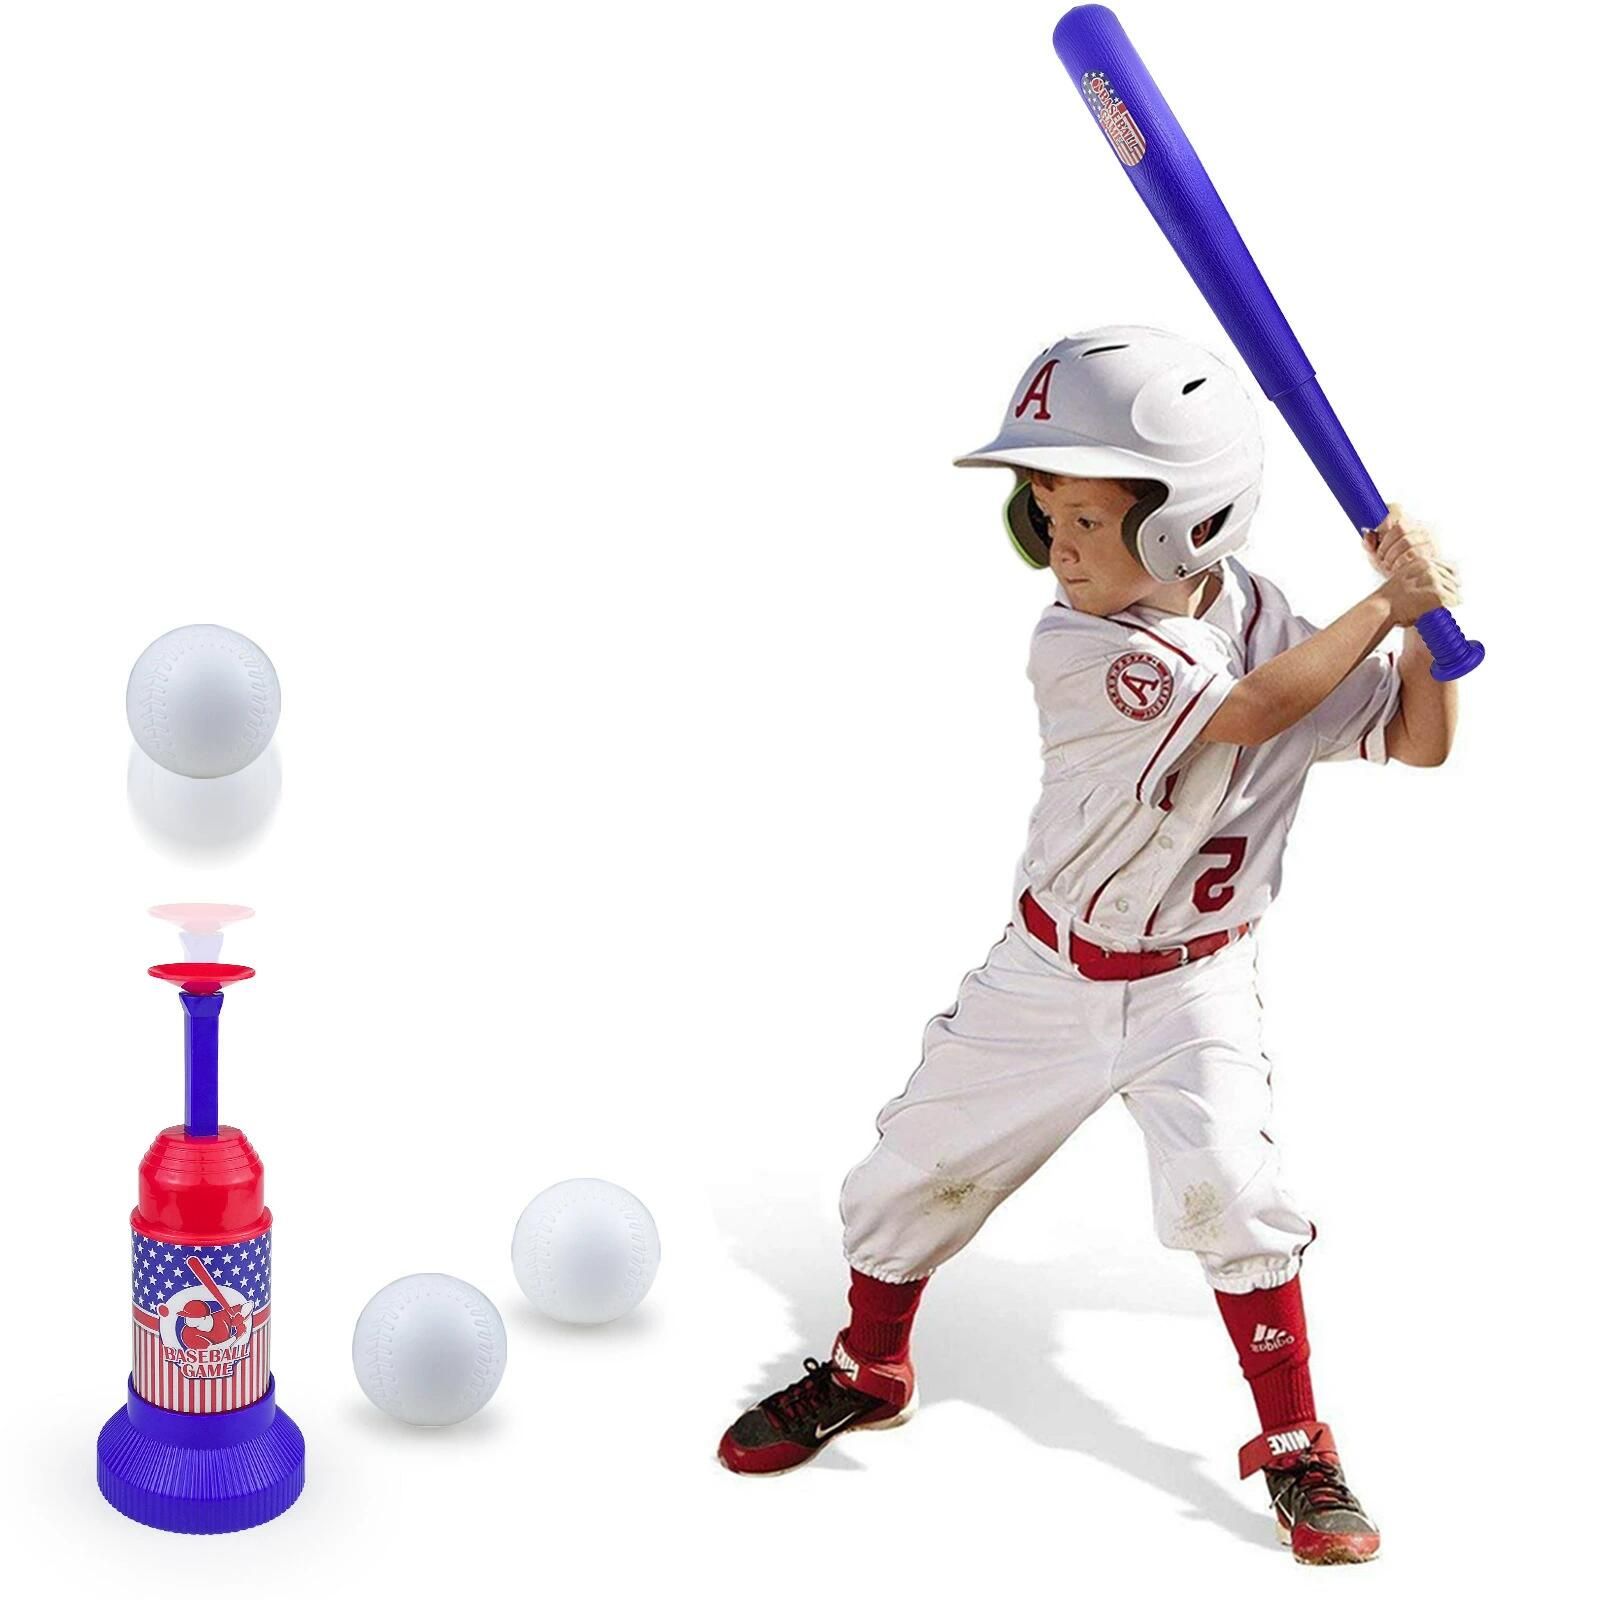 野球おもちゃ 野球セット 野球バット 野球 おもちゃ 外おもちゃ 子供 スポーツ スポーツゲーム ベースボール スポンジ 室内室外 プレゼント